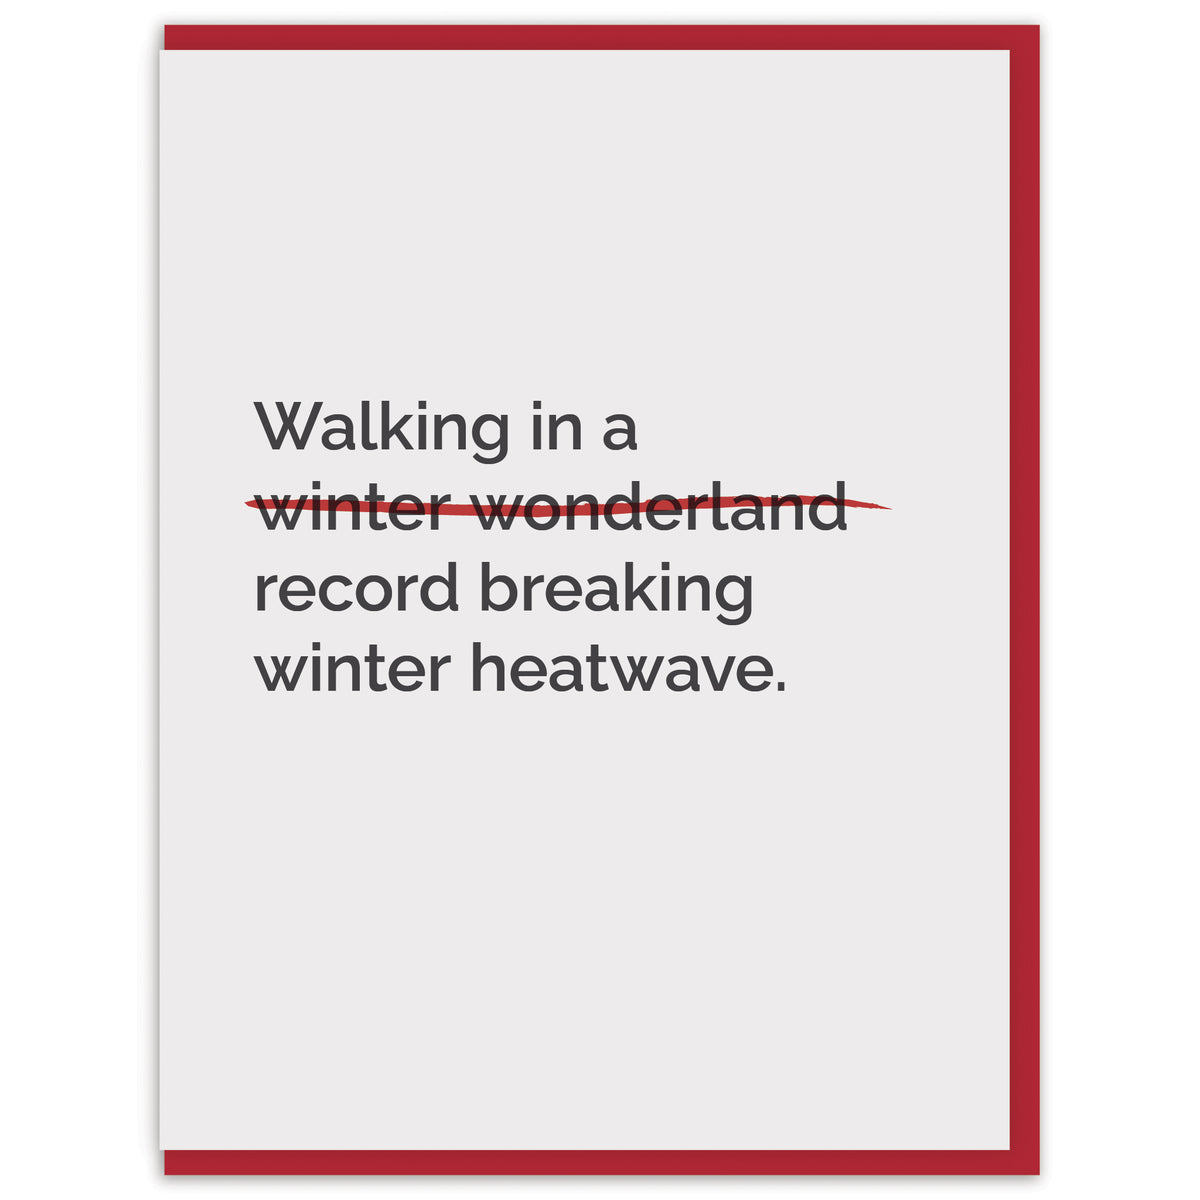 Walking in a record breaking winter heatwave.